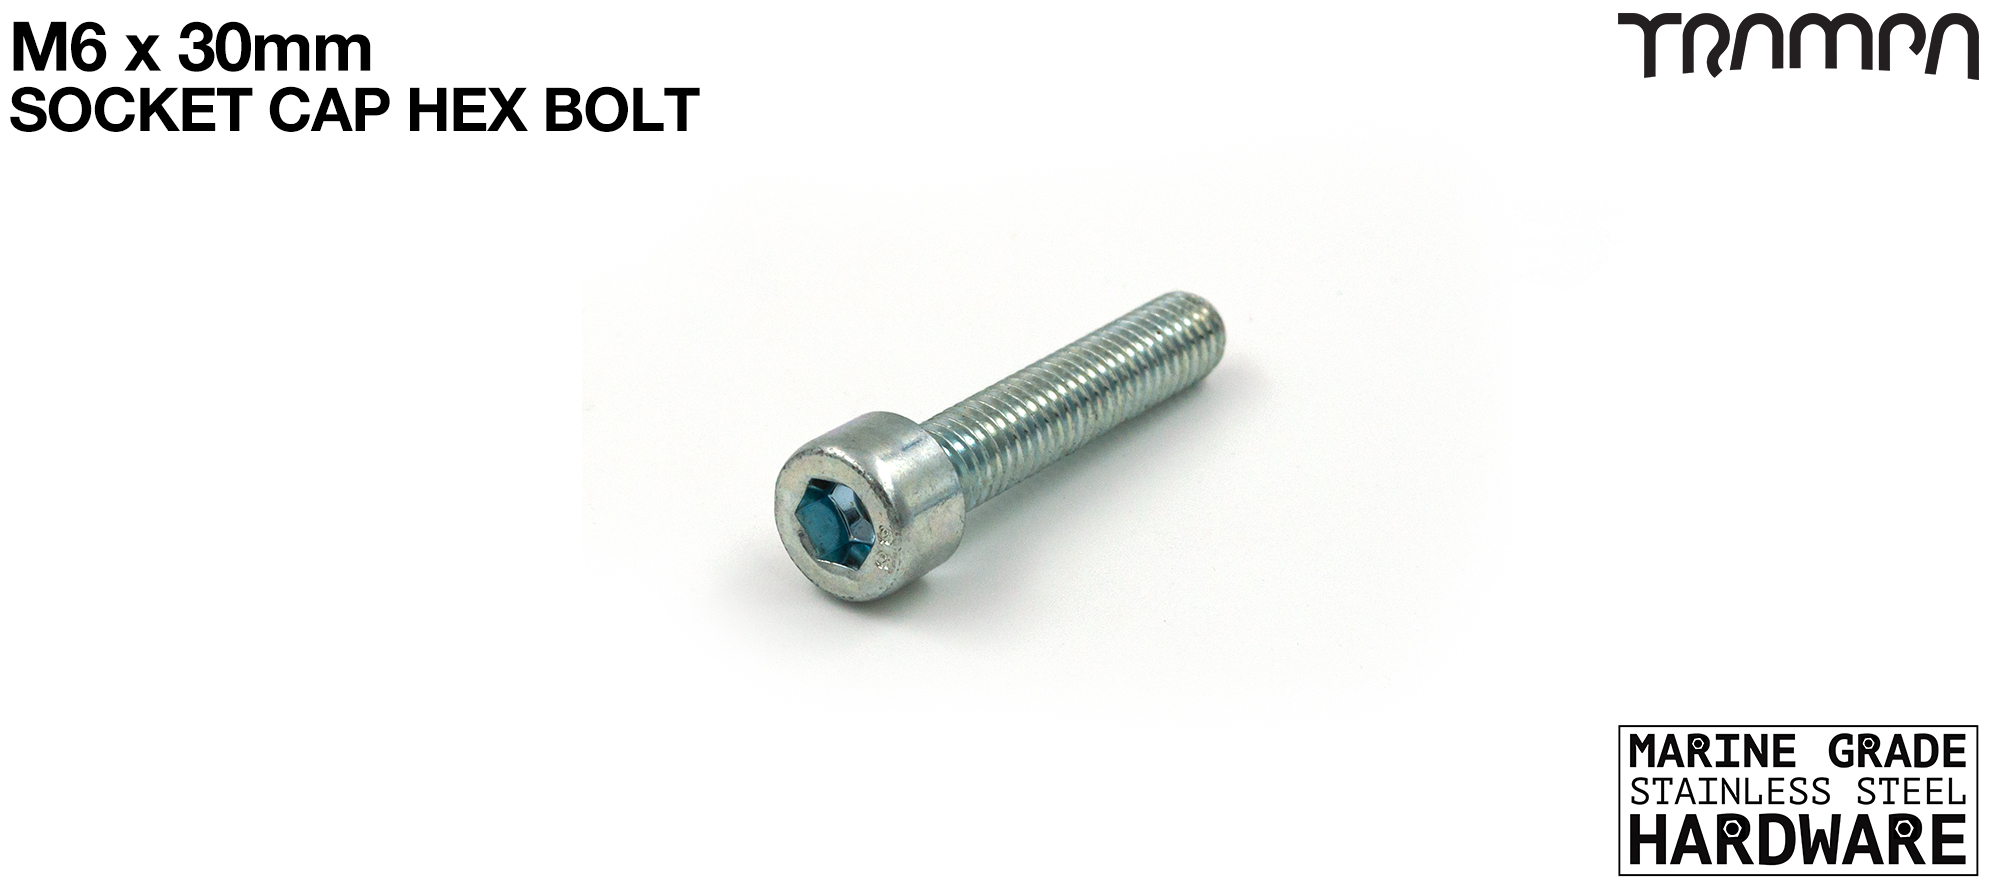 M6 x 30mm Socket Capped Allen-Key Bolt for primo hub - Marine Grade Stainless steel